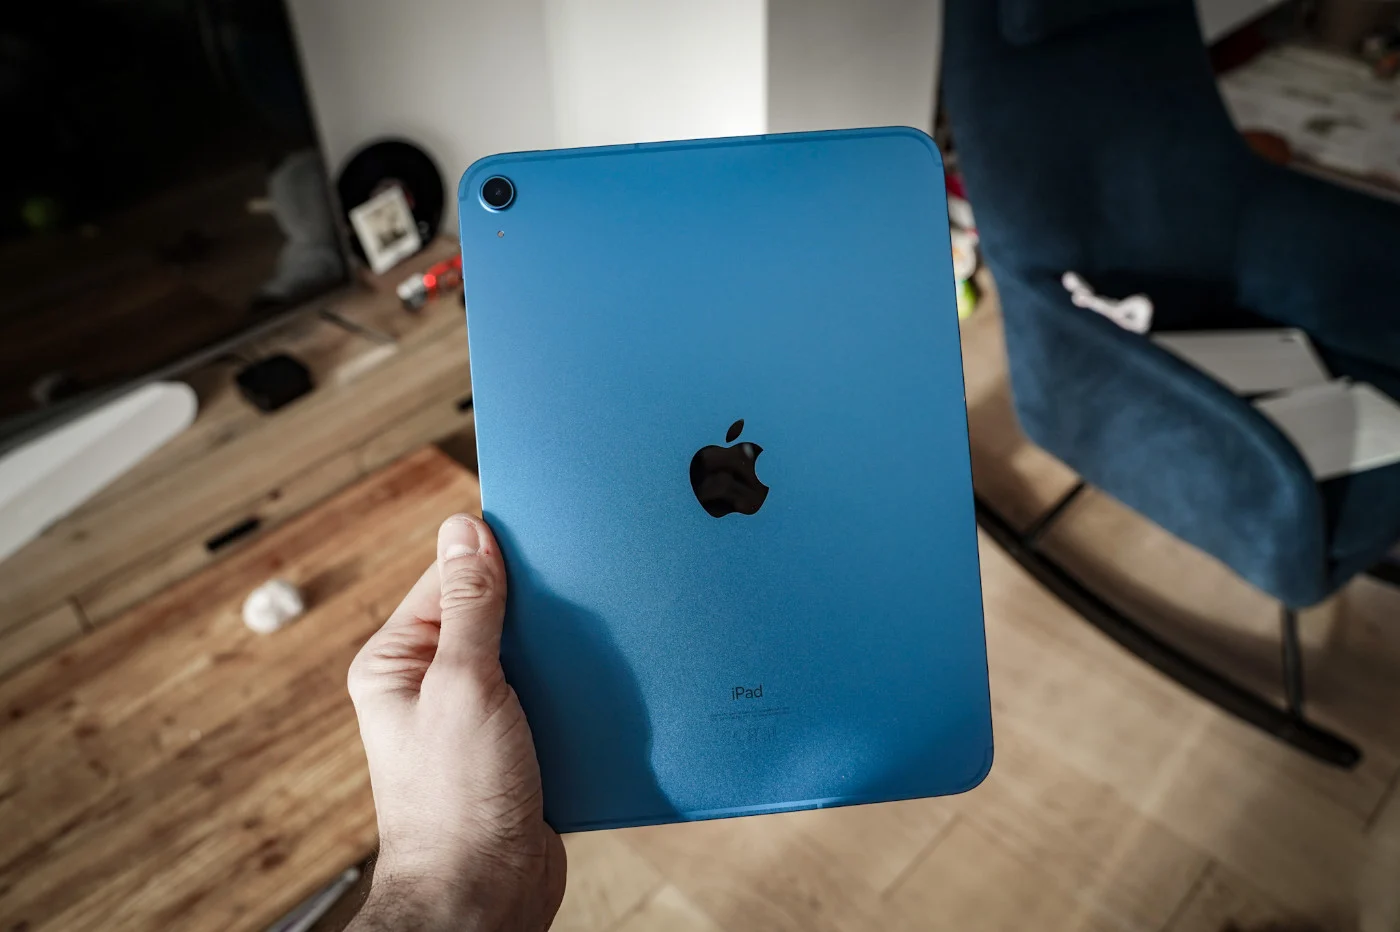 iPad mini 4 : Apple renouvelle aussi sa tablette 7,9 pouces - CNET